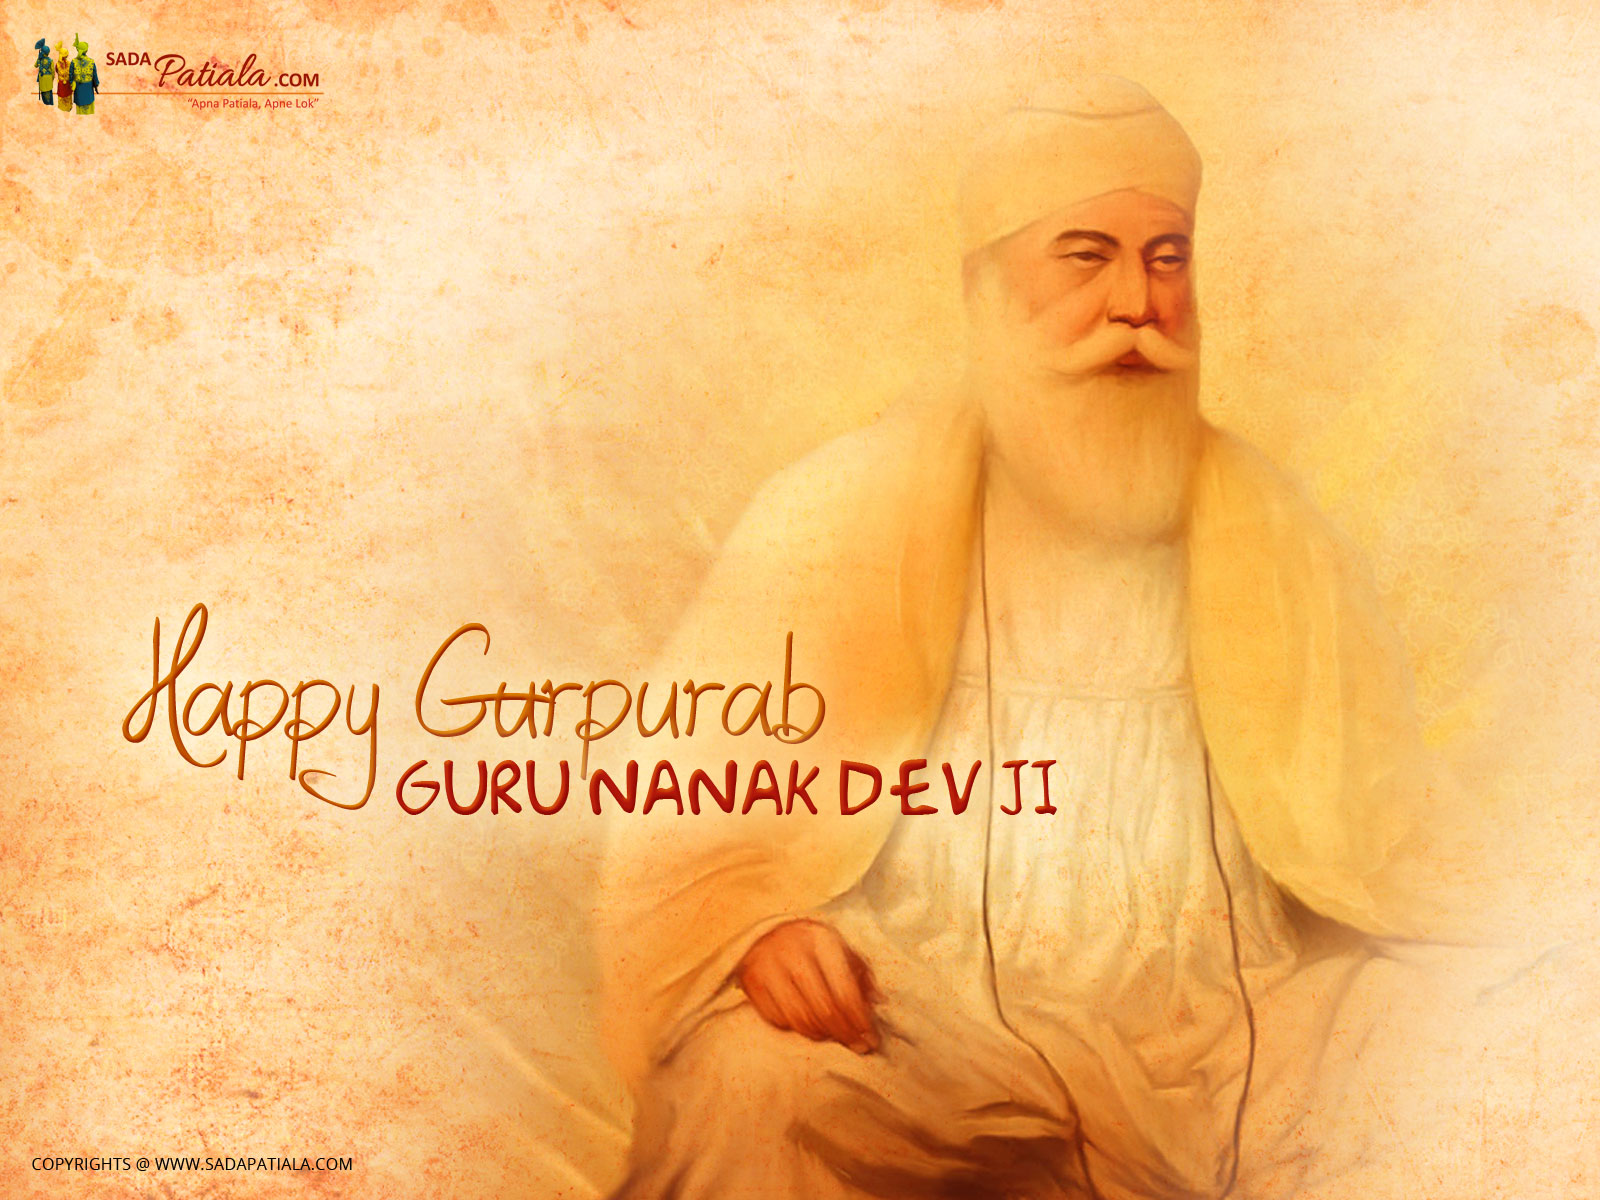 Guru Nanak Dev Ji Gupurab